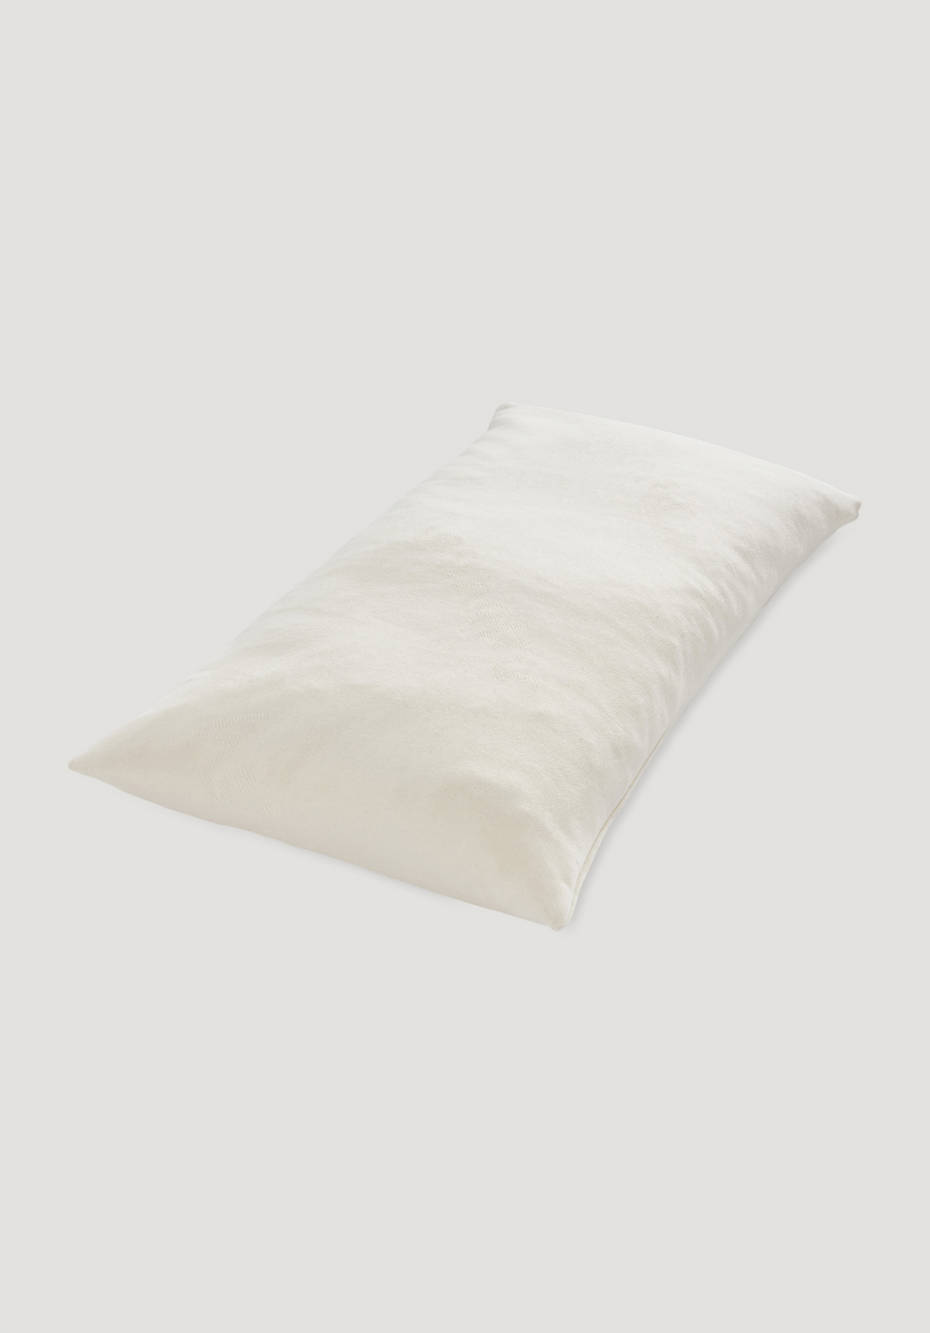 Neck support pillow FLEXIBLE